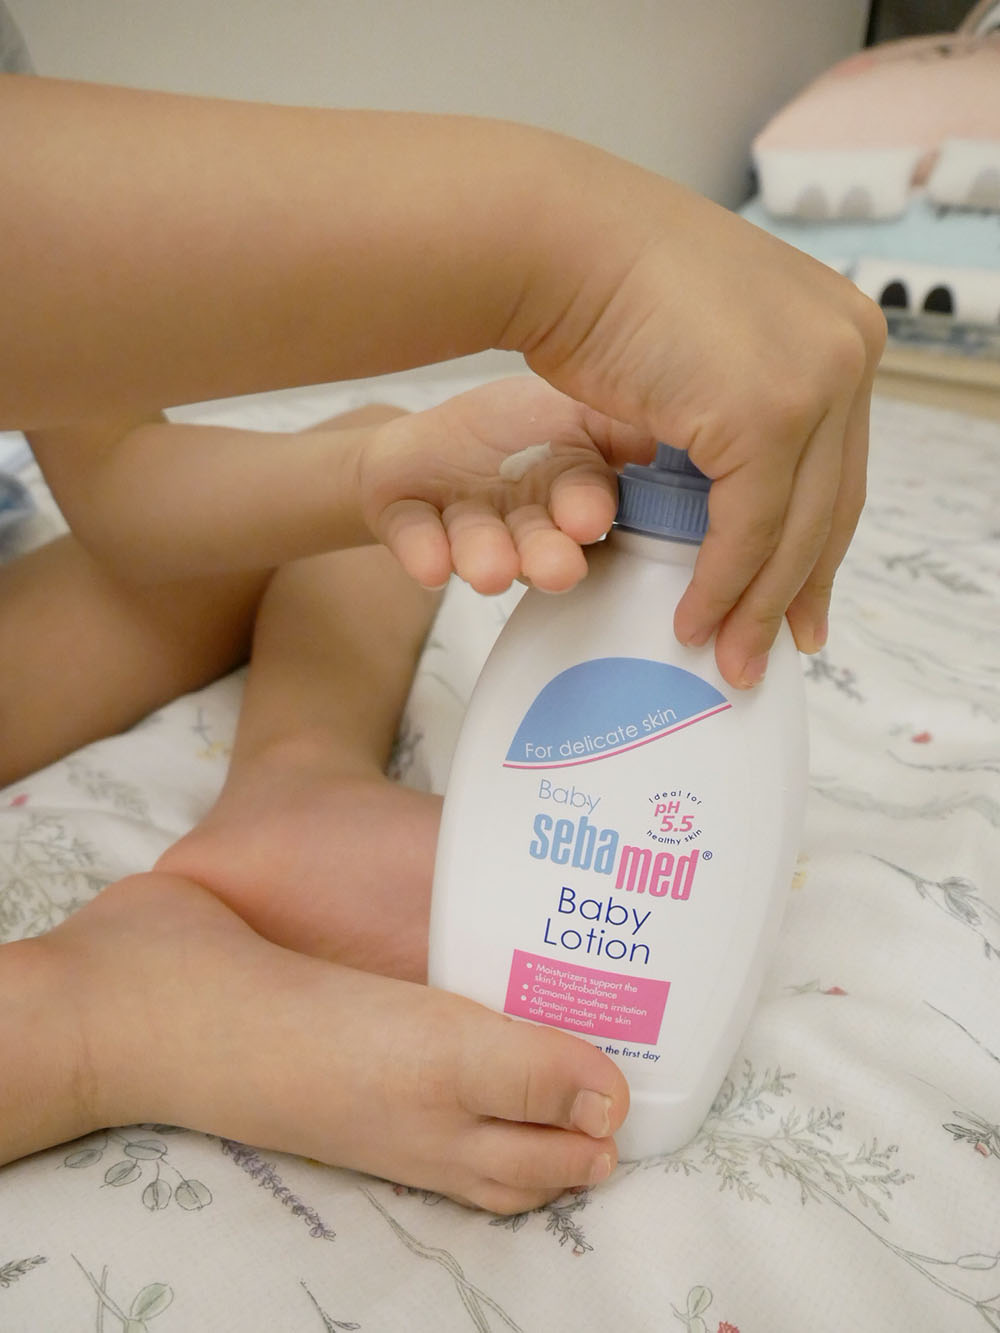 [育兒] 德國施巴5.5嬰兒泡泡浴露.給小朋友溫柔清潔呵護.讓小朋友好愛洗澡的秘密武器